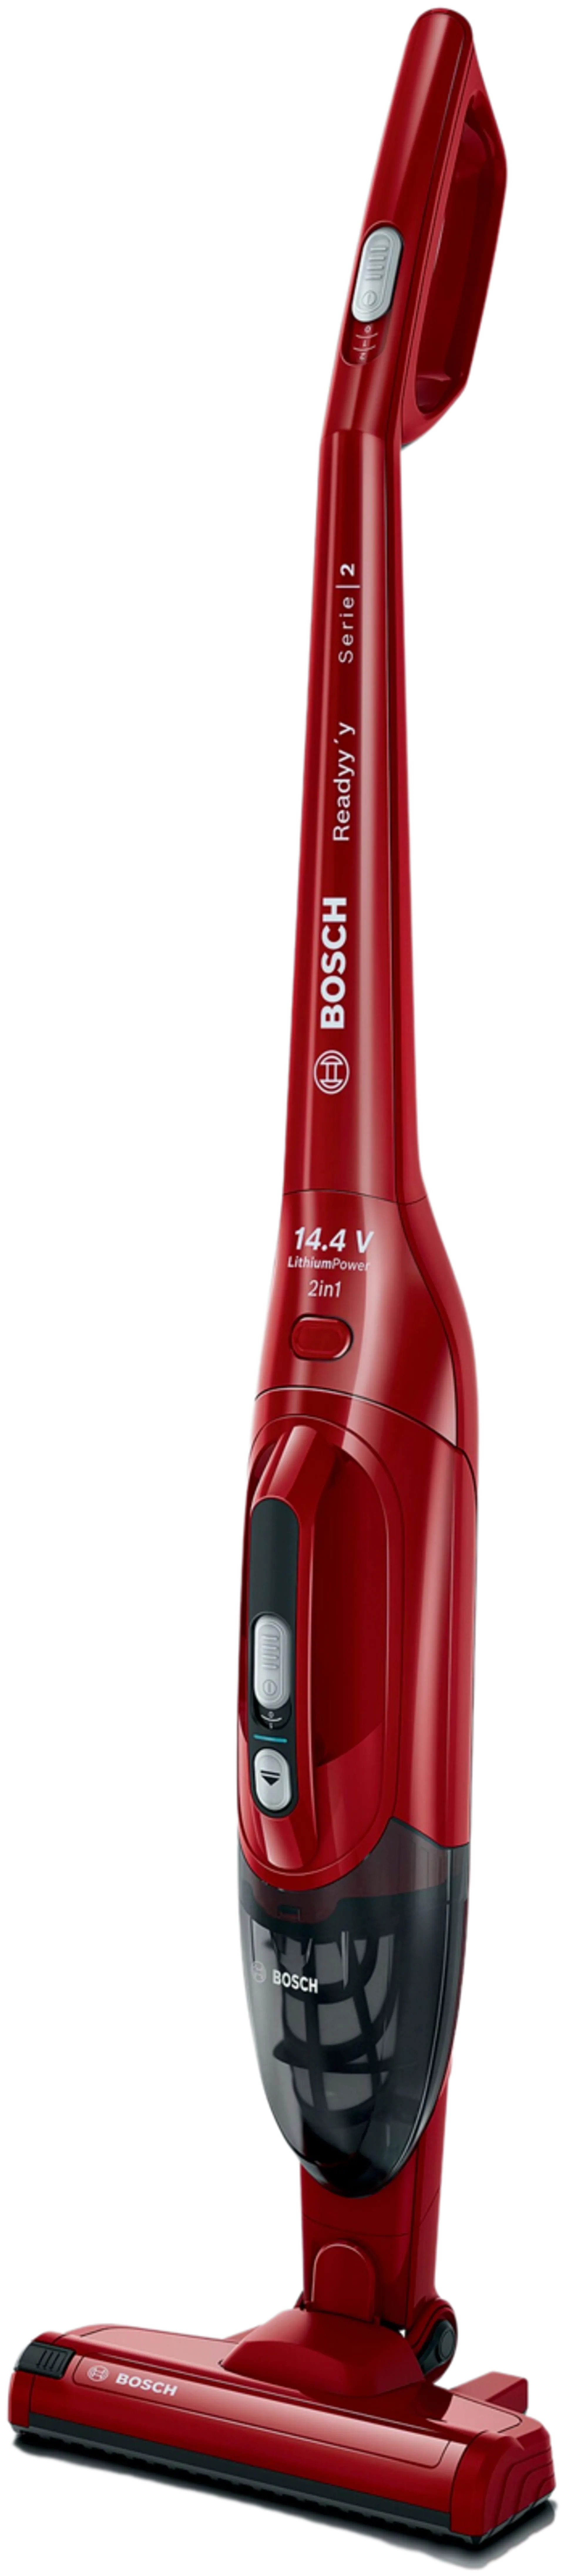 Bosch ladattava pölynimuri, Readyy'y 14.4V, punainen